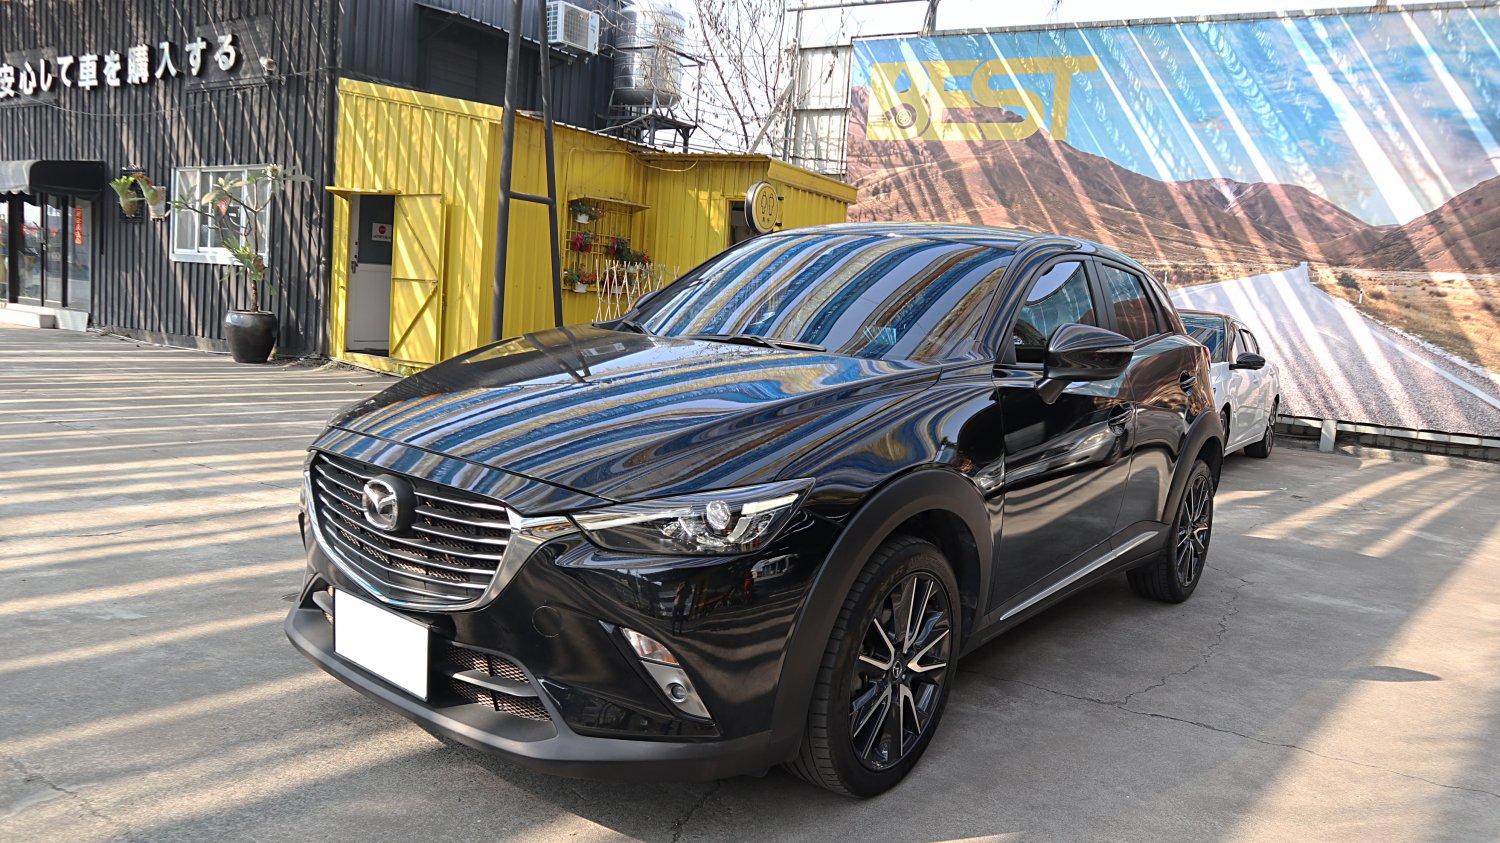 Mazda 馬自達 ／ CX-3 ／ 2017年 ／ 2017年Mazda CX-3 黑色 馬自達中古車 ／ MG車庫(台南)